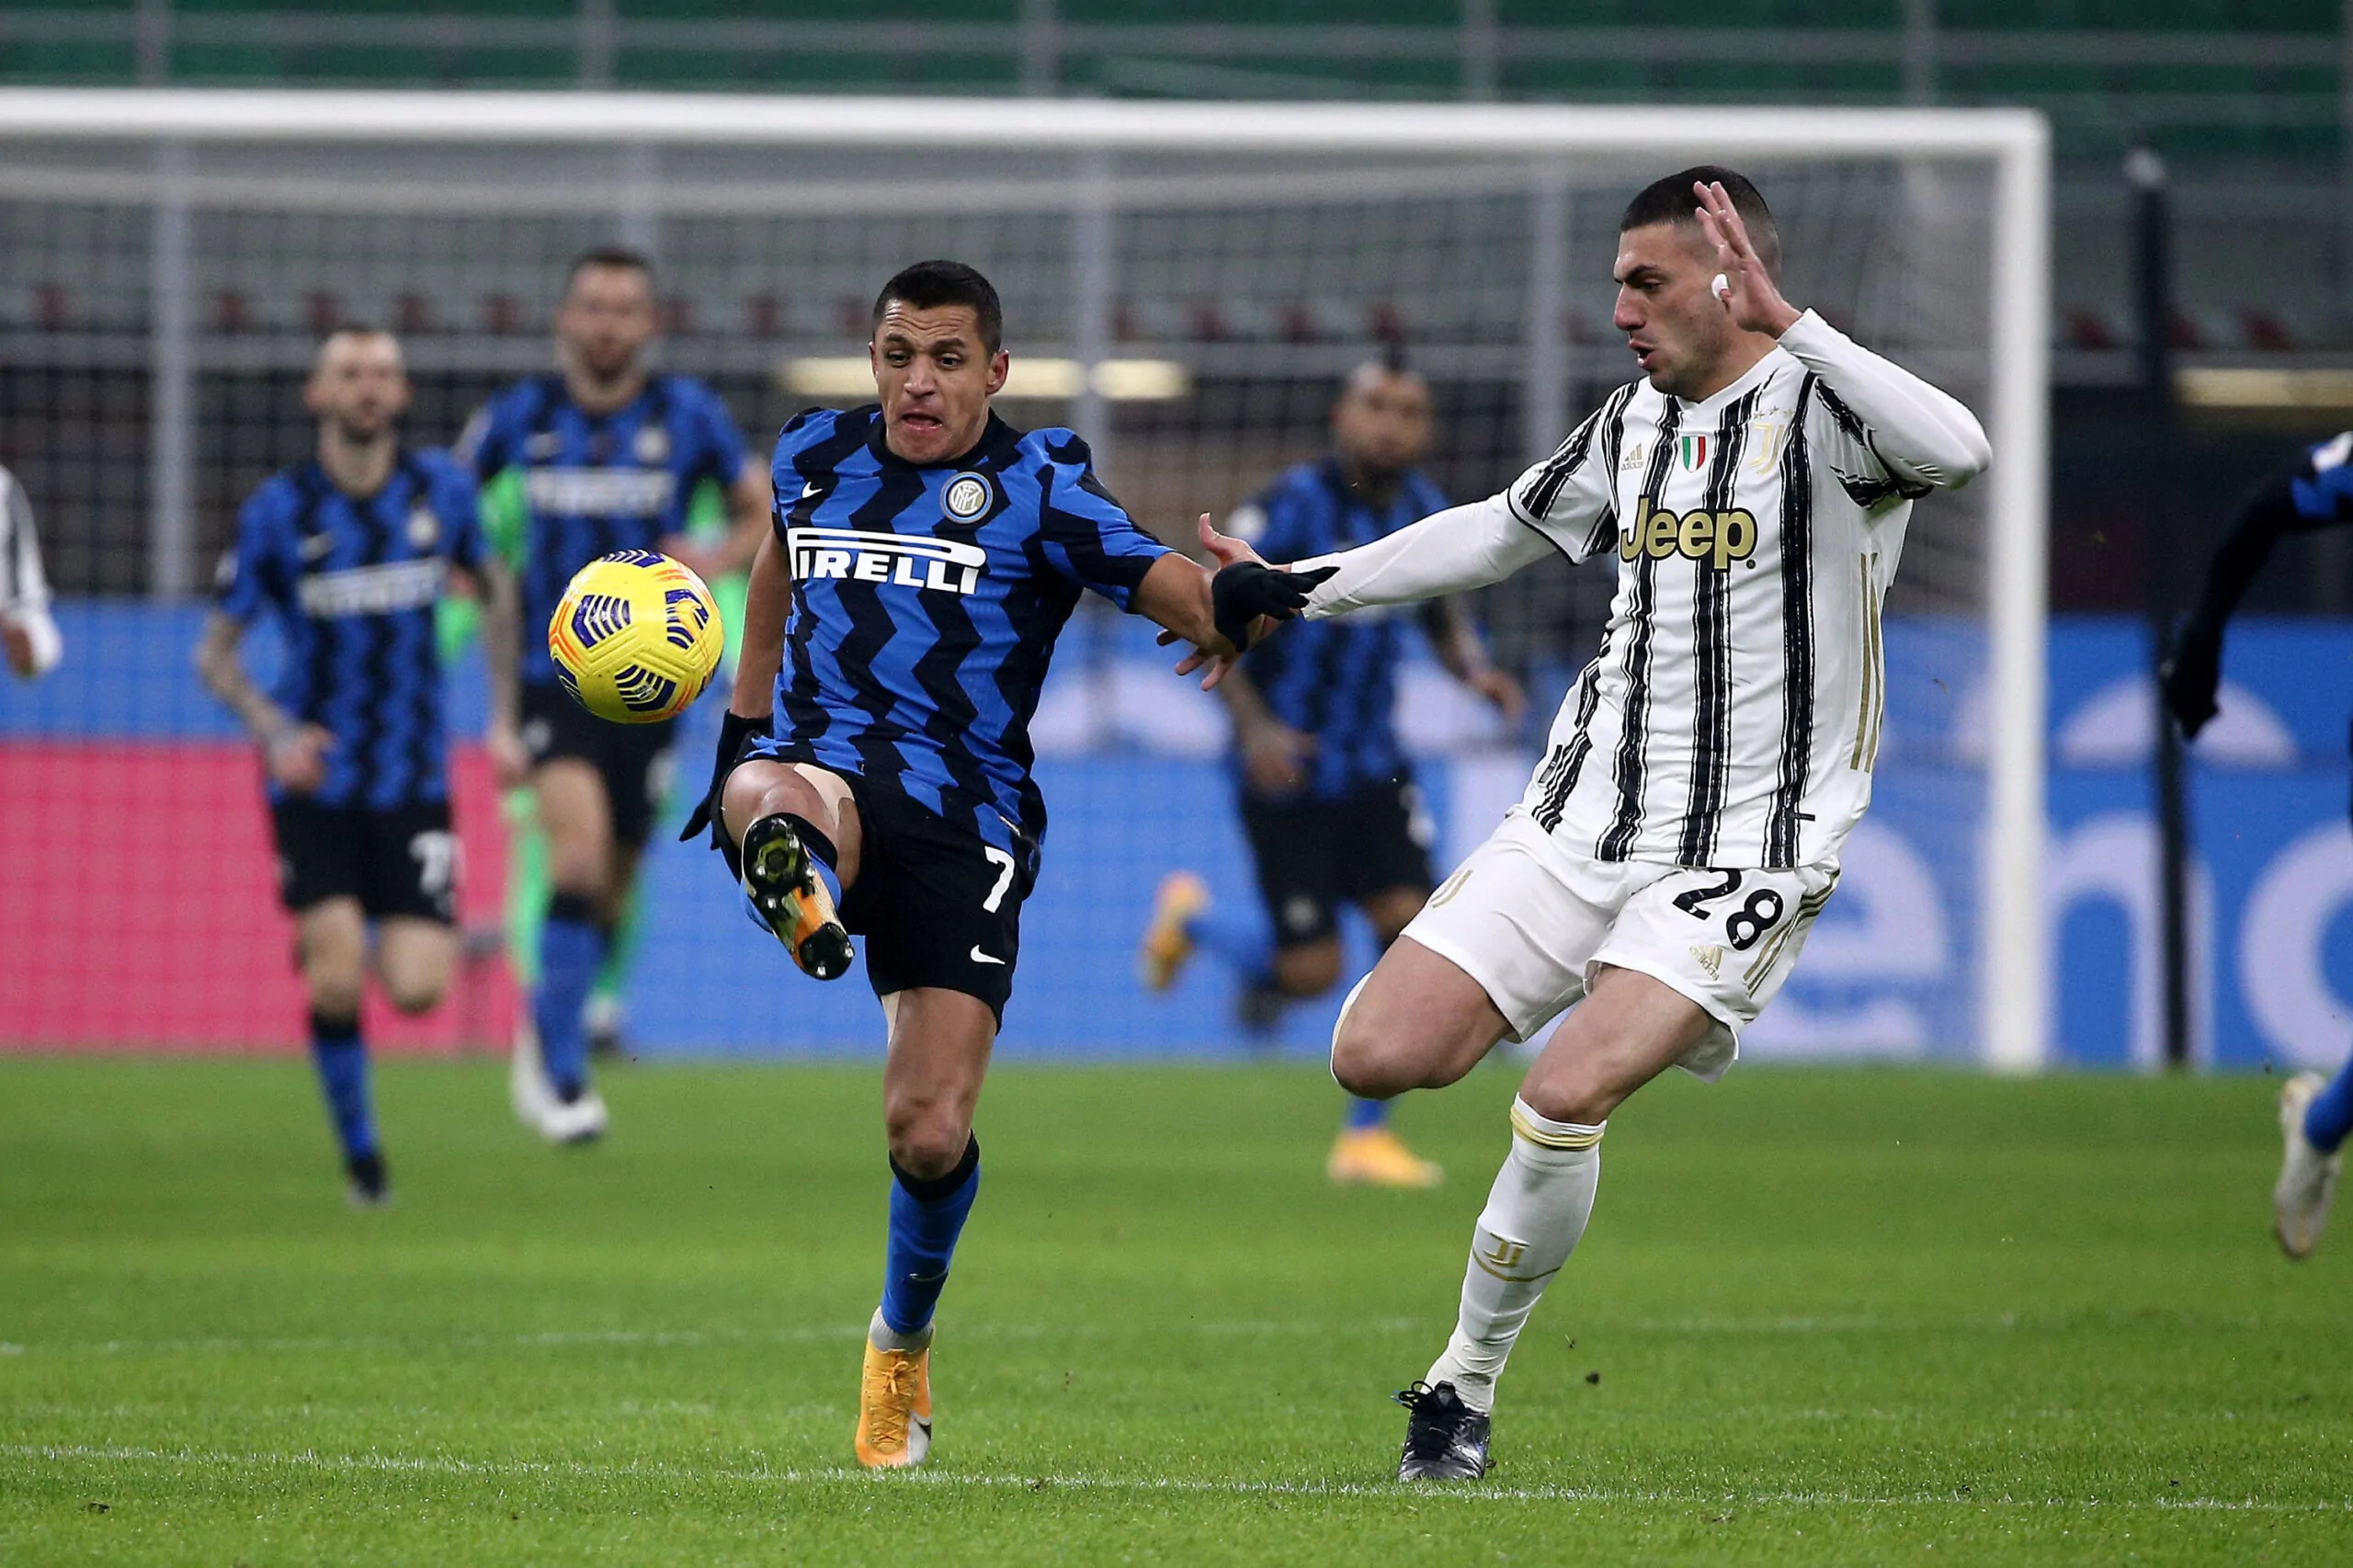 Verso Inter-Juventus, buone notizie per Inzaghi: torna a disposizione un centrocampista